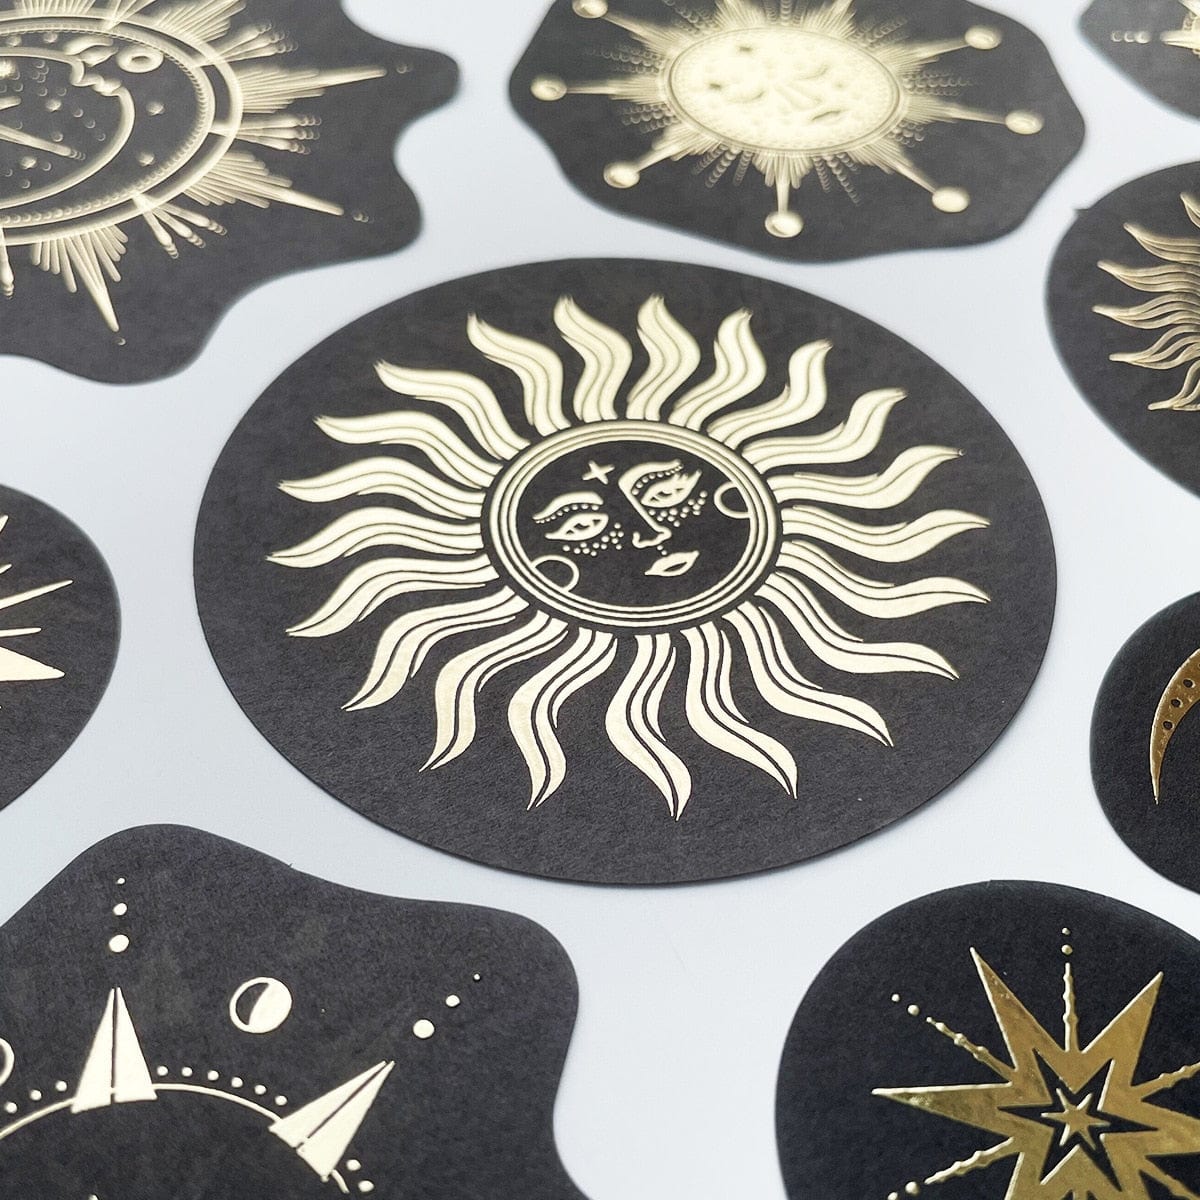 KUMA Stationery & Crafts  Large 40pcs Constellation/Zodiac Sticker Set